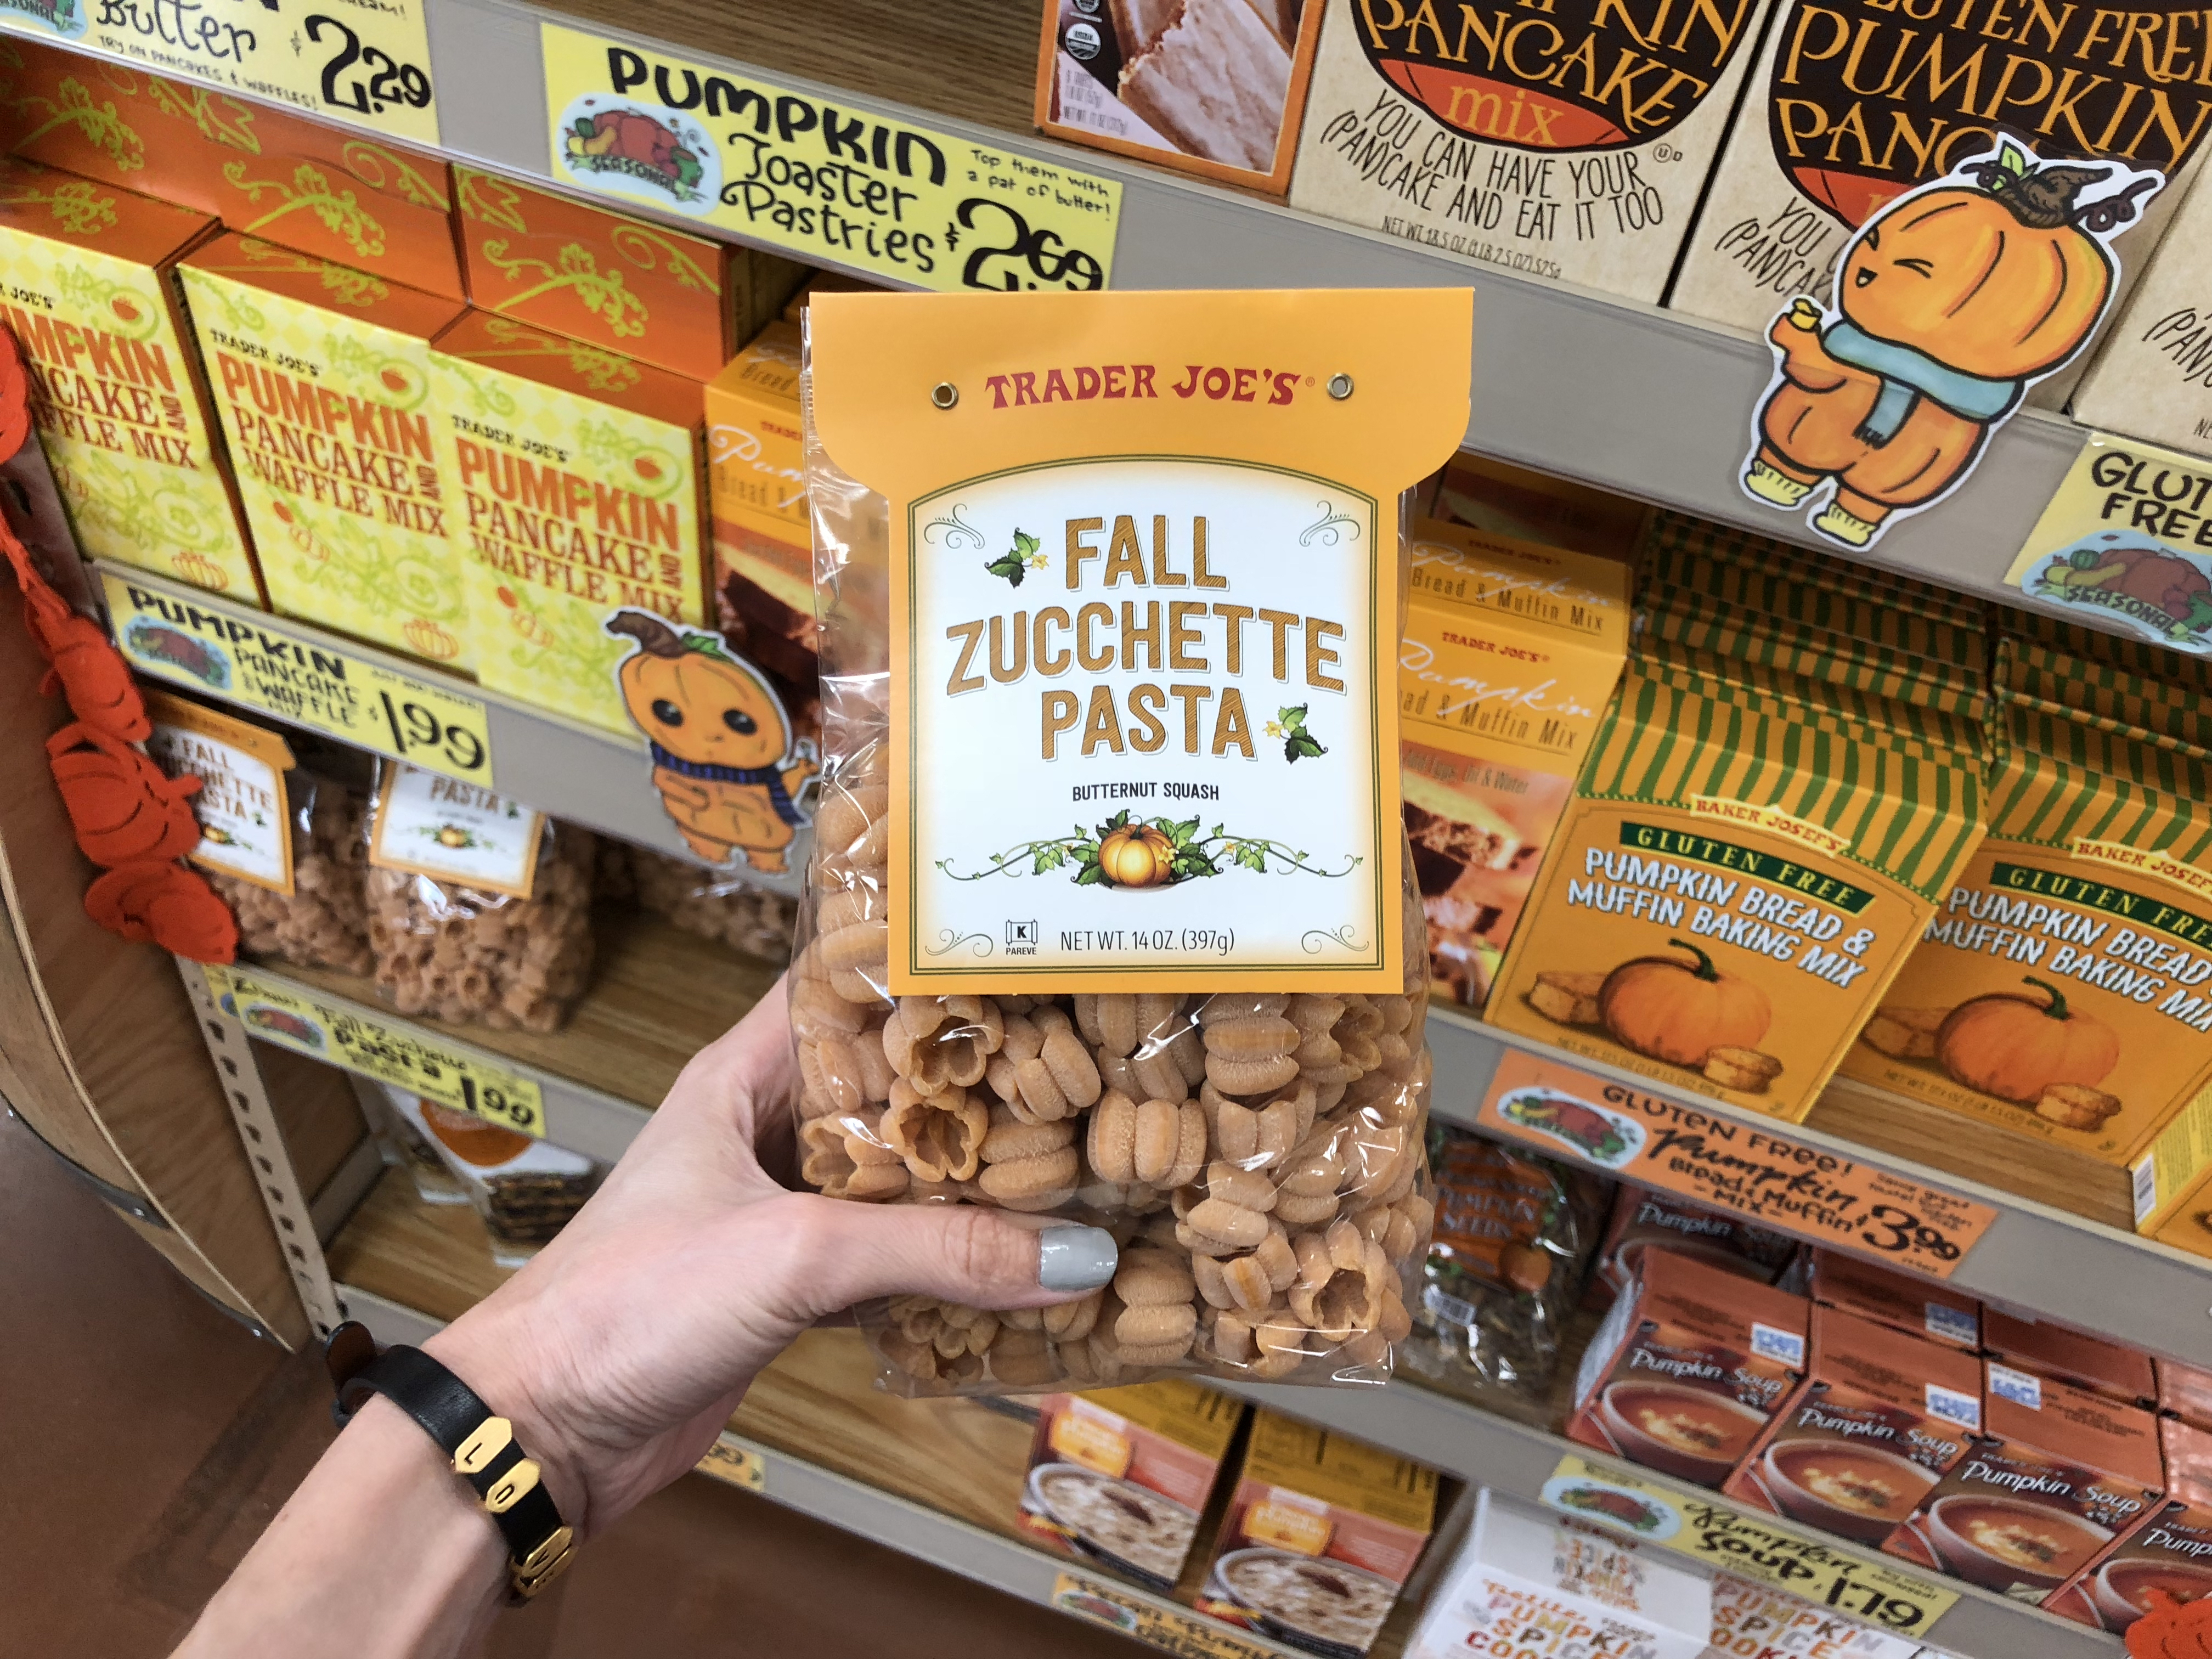 Deals on Trader Joe's Pumpkin items – Fall Pasta at Trader Joe's